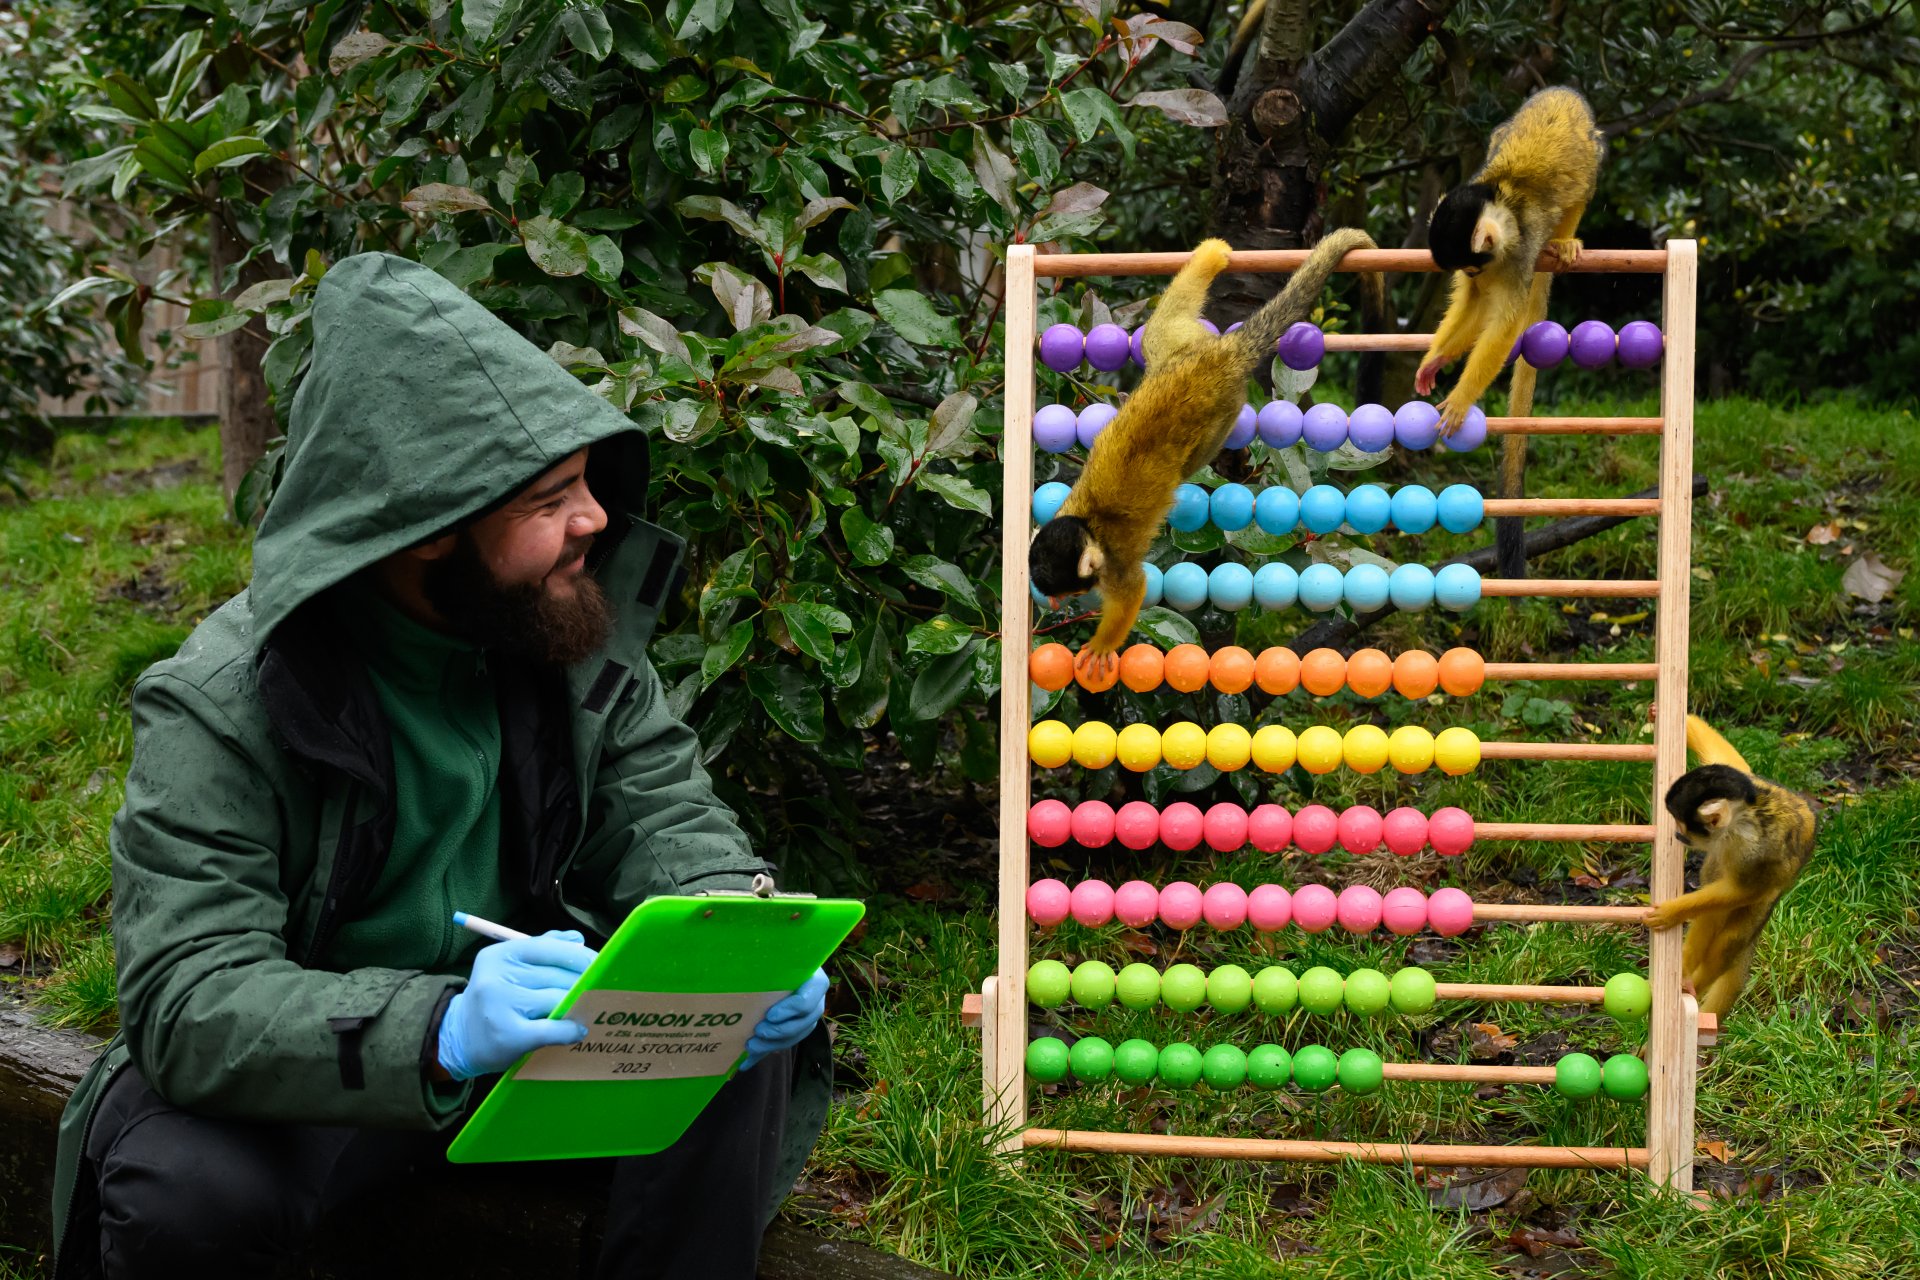 Катерици-маймуни шават по сметало по време на фотосесия, за да илюстрират годишната инвентаризация в Лондонския зоопарк на 3 януари 2023 г. в Лондон, Англия.